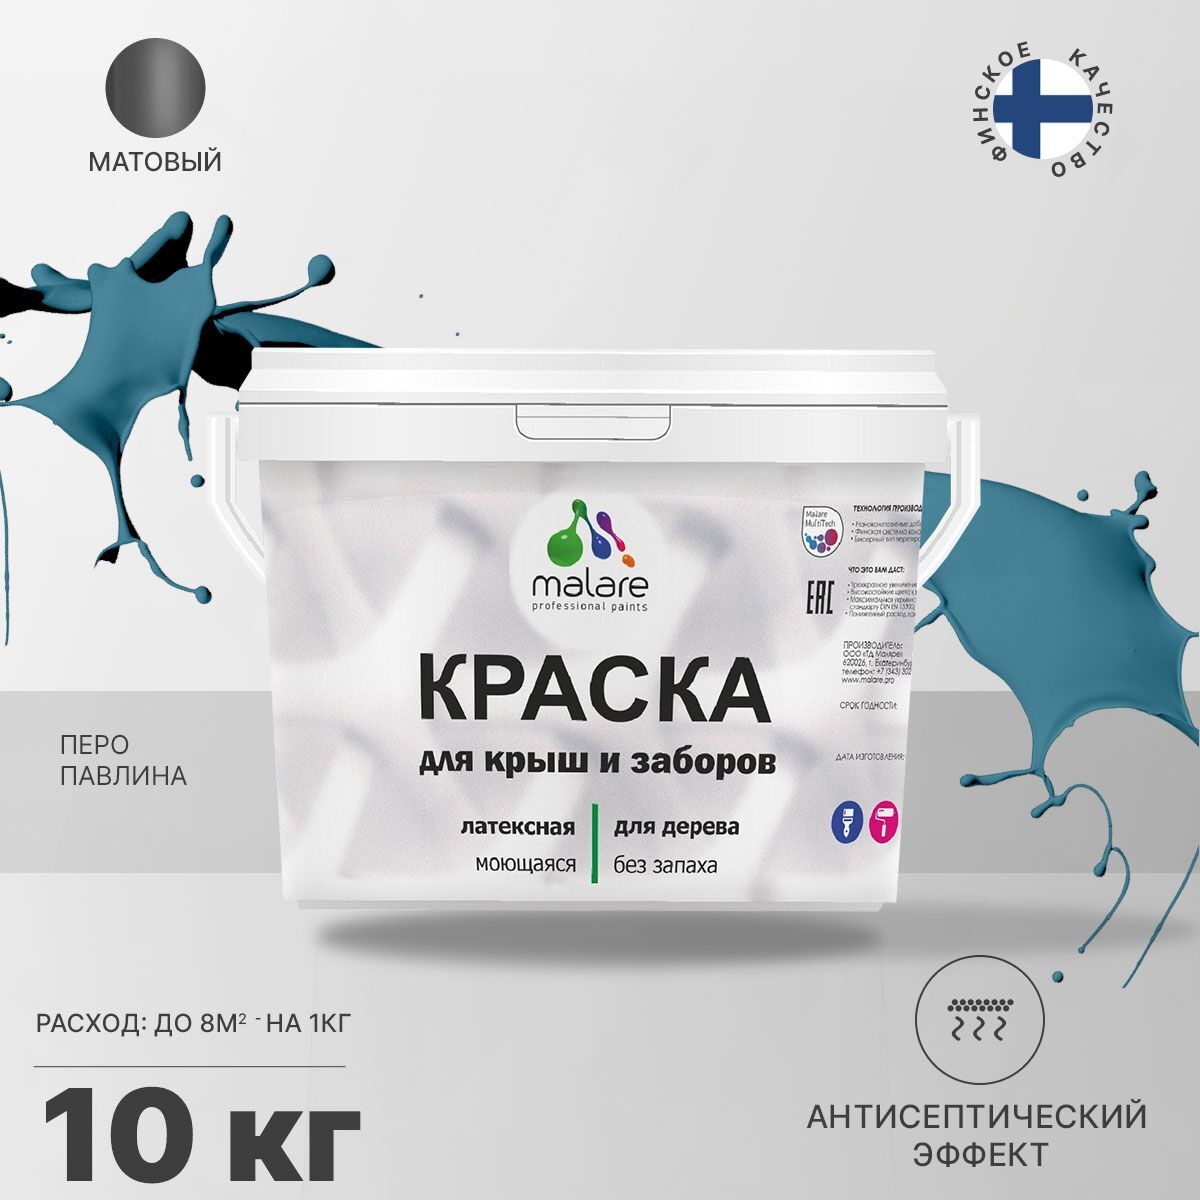 Краска Malare специализированная Акриловая, Латексная, Полиуретановая, 10 кг перо павлина КДЗАБКРШМ103